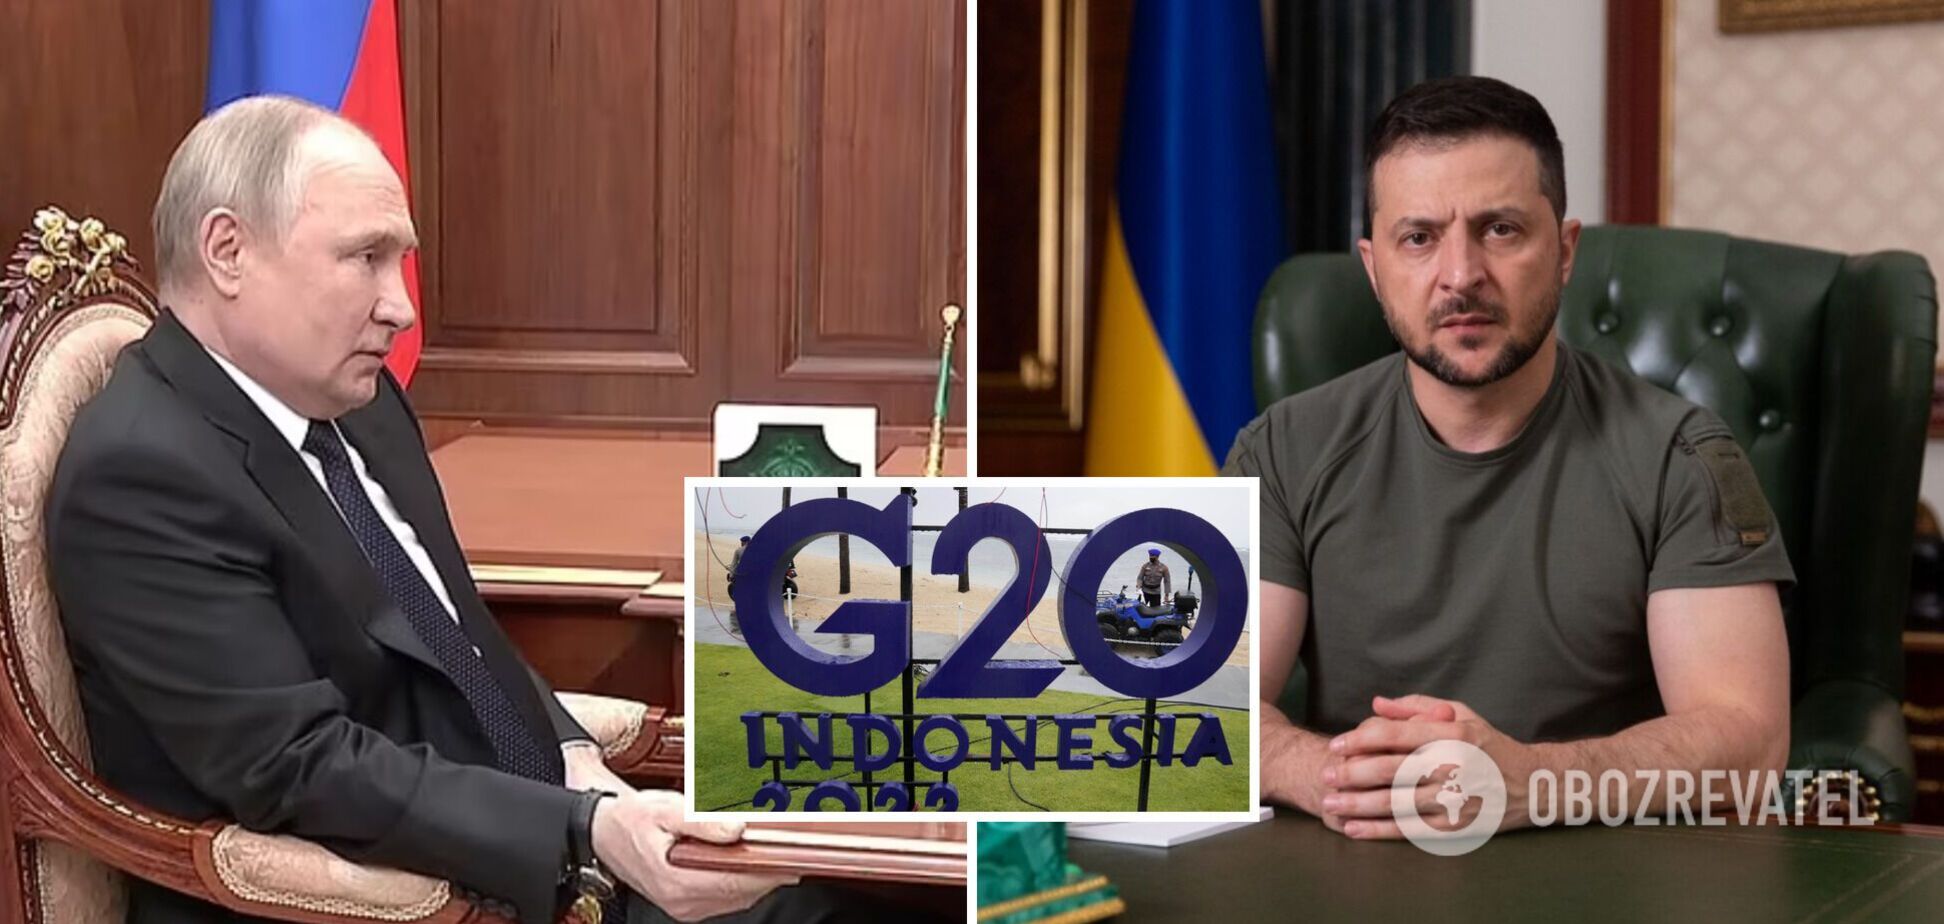  Путін та  Зеленський погодилися взяти участь у  саміті G20 в Індонезії  – The National 